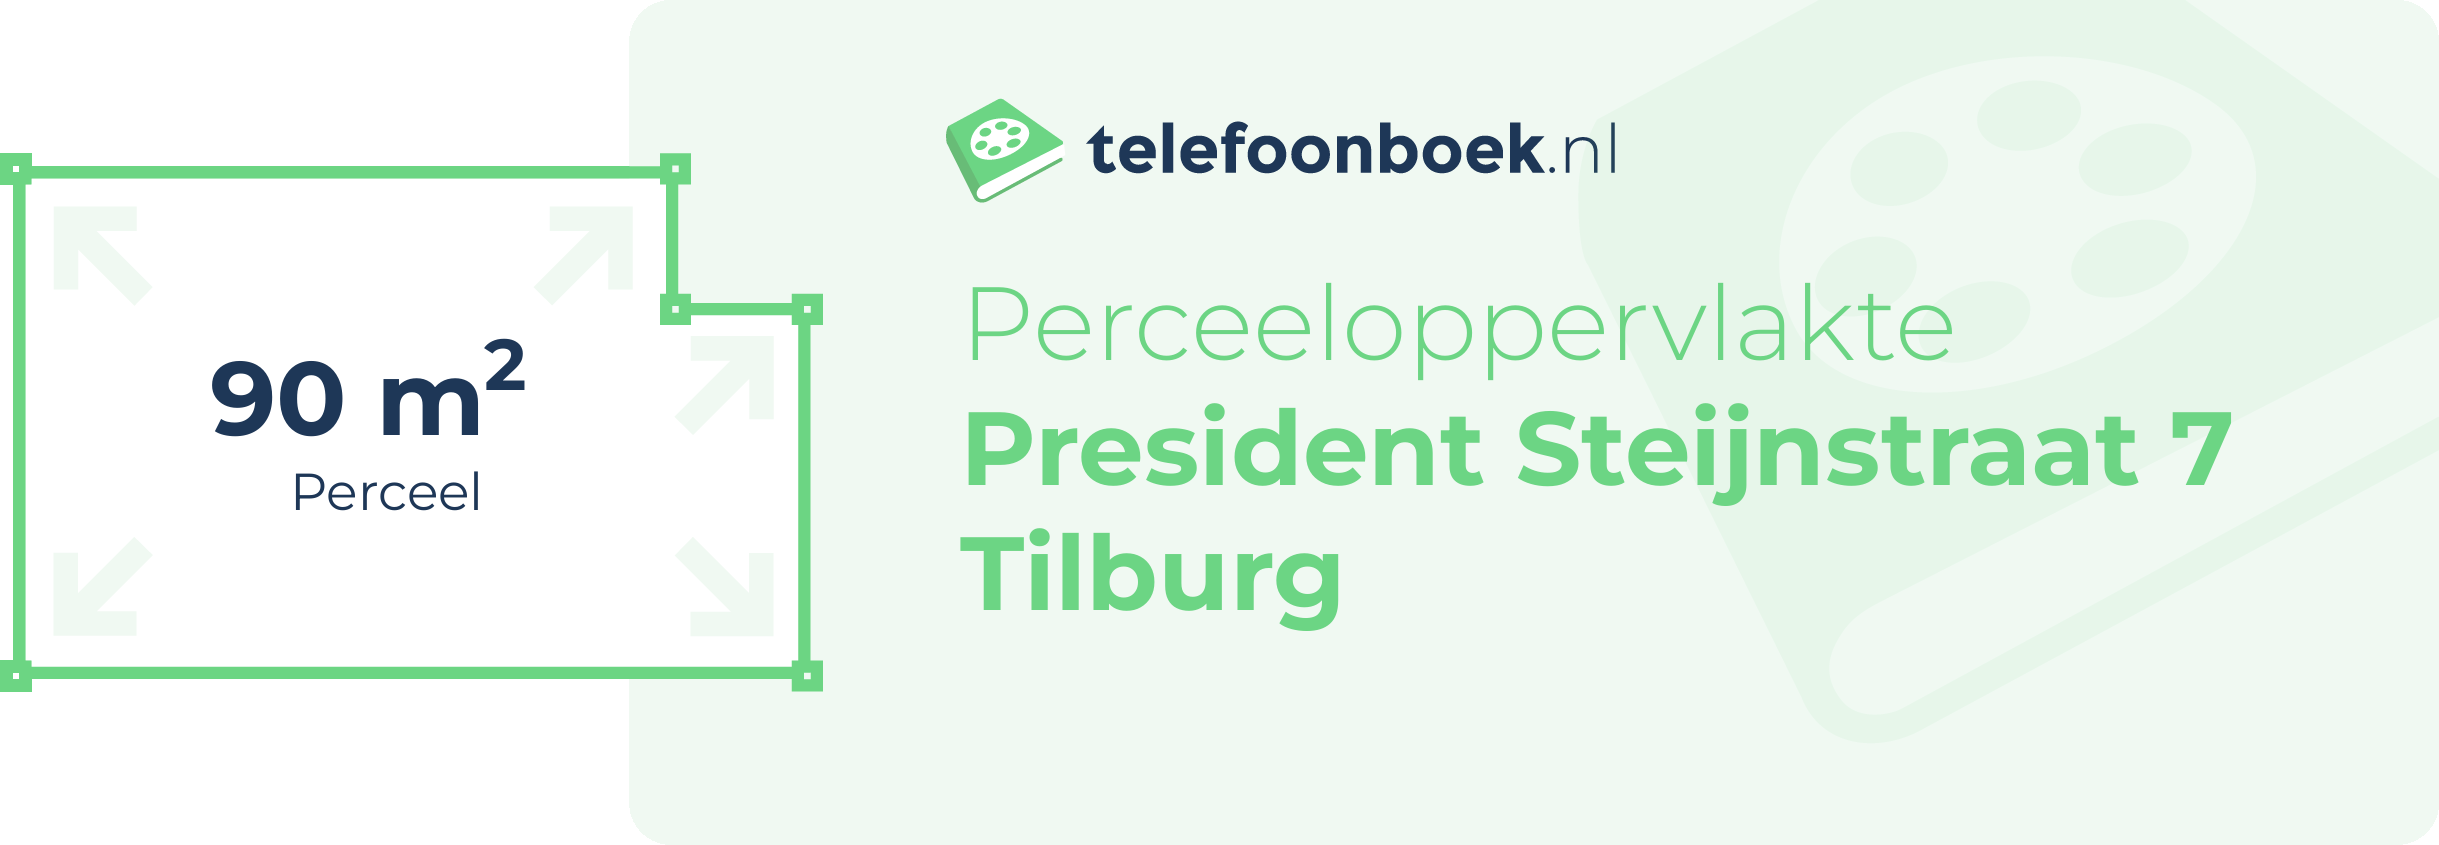 Perceeloppervlakte President Steijnstraat 7 Tilburg